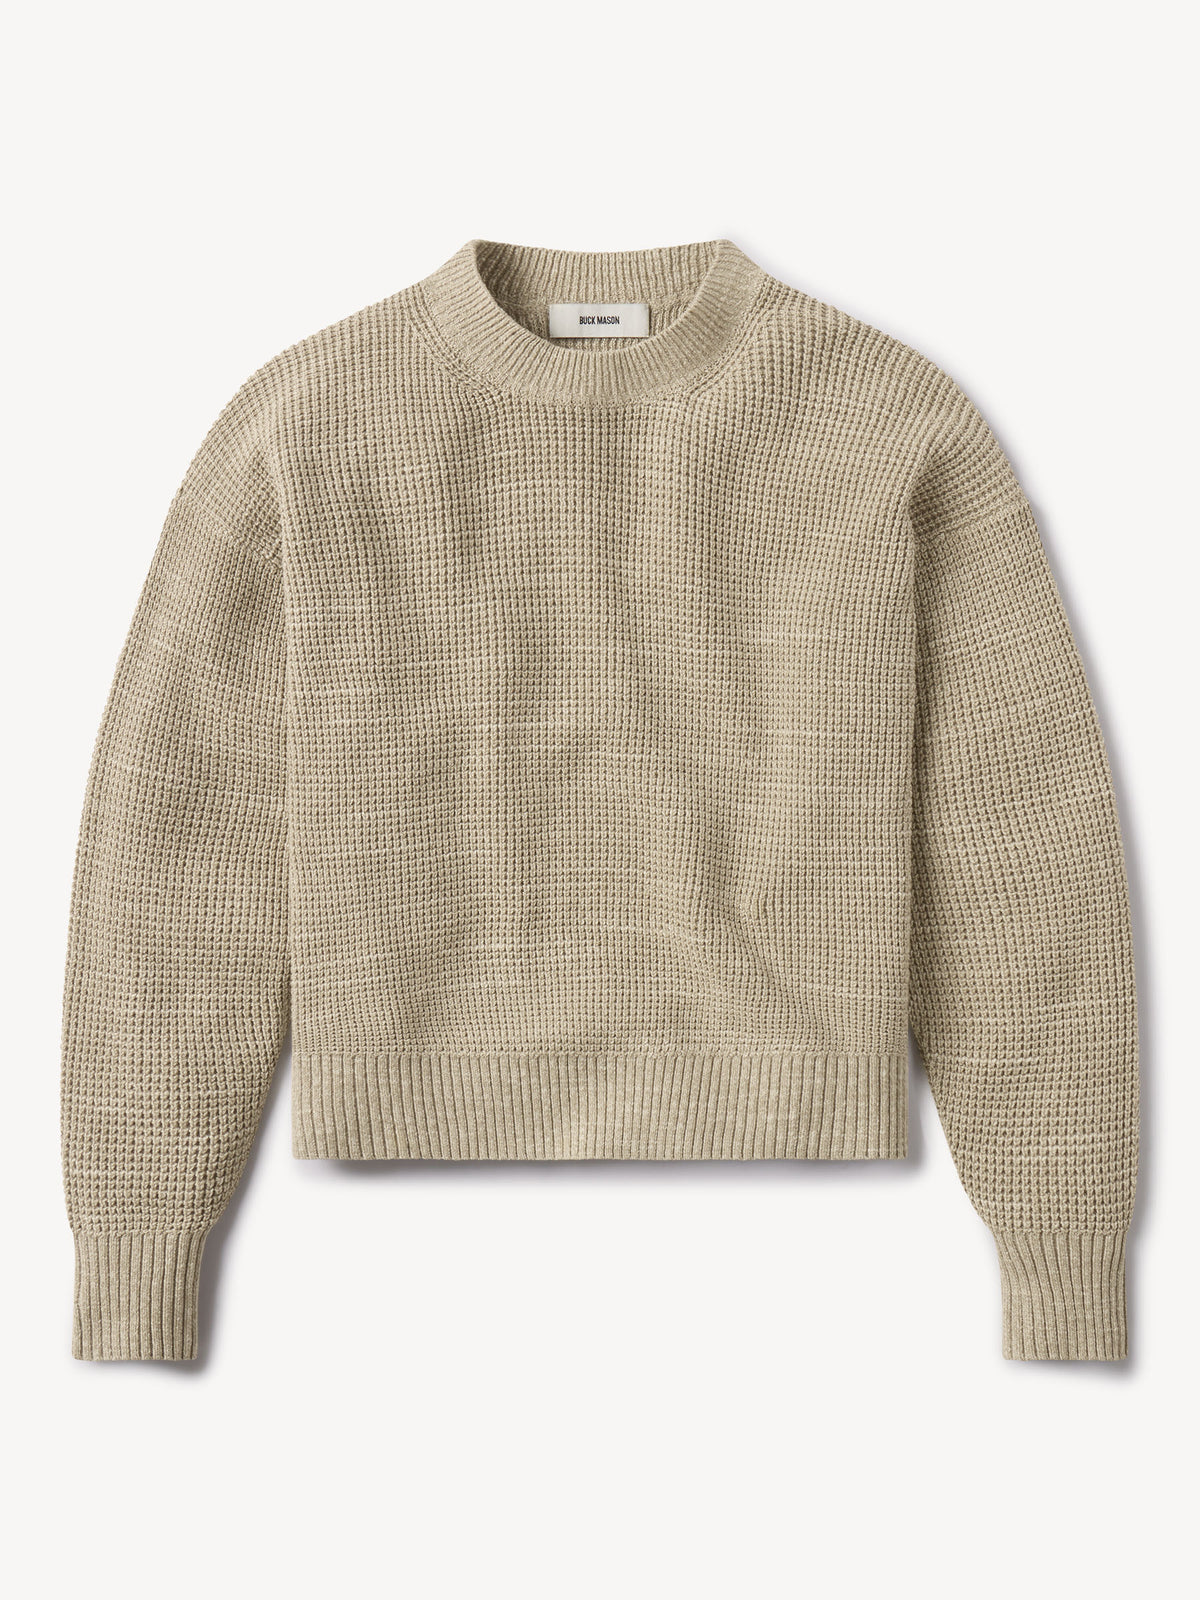 Seafarer Cotton Crewneck Sweater